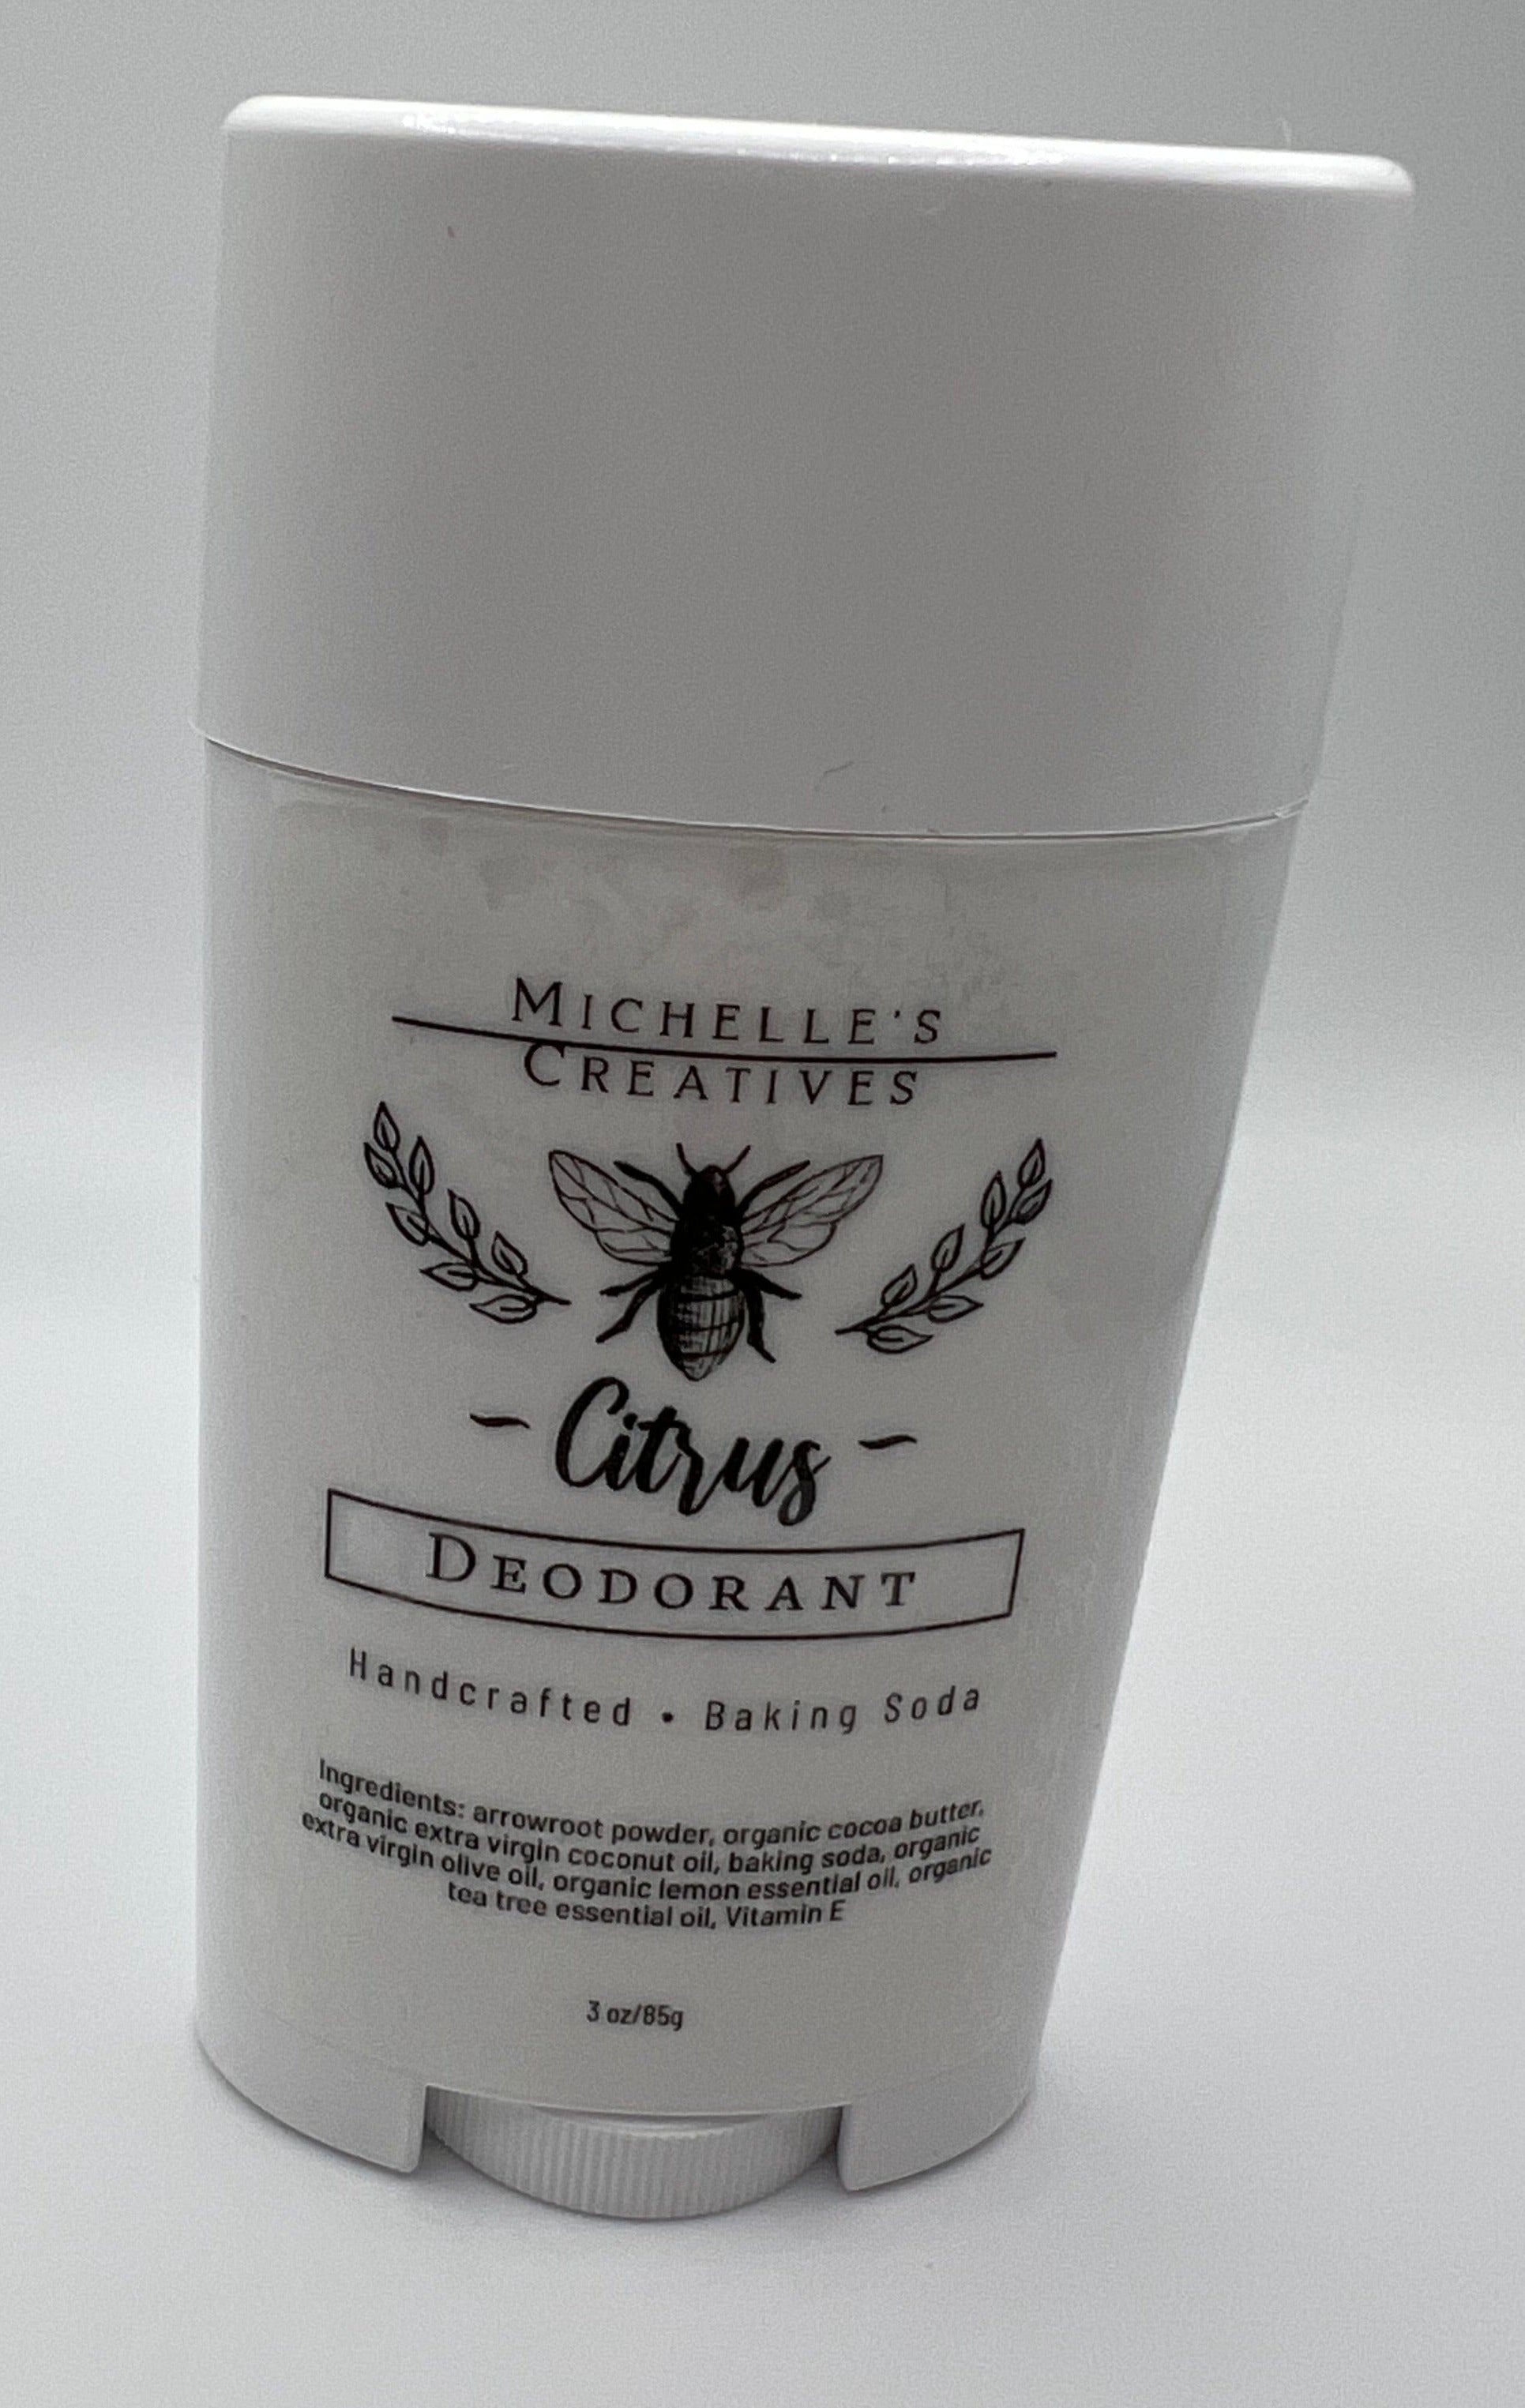 Michelle's Creatives Citrus deodorant